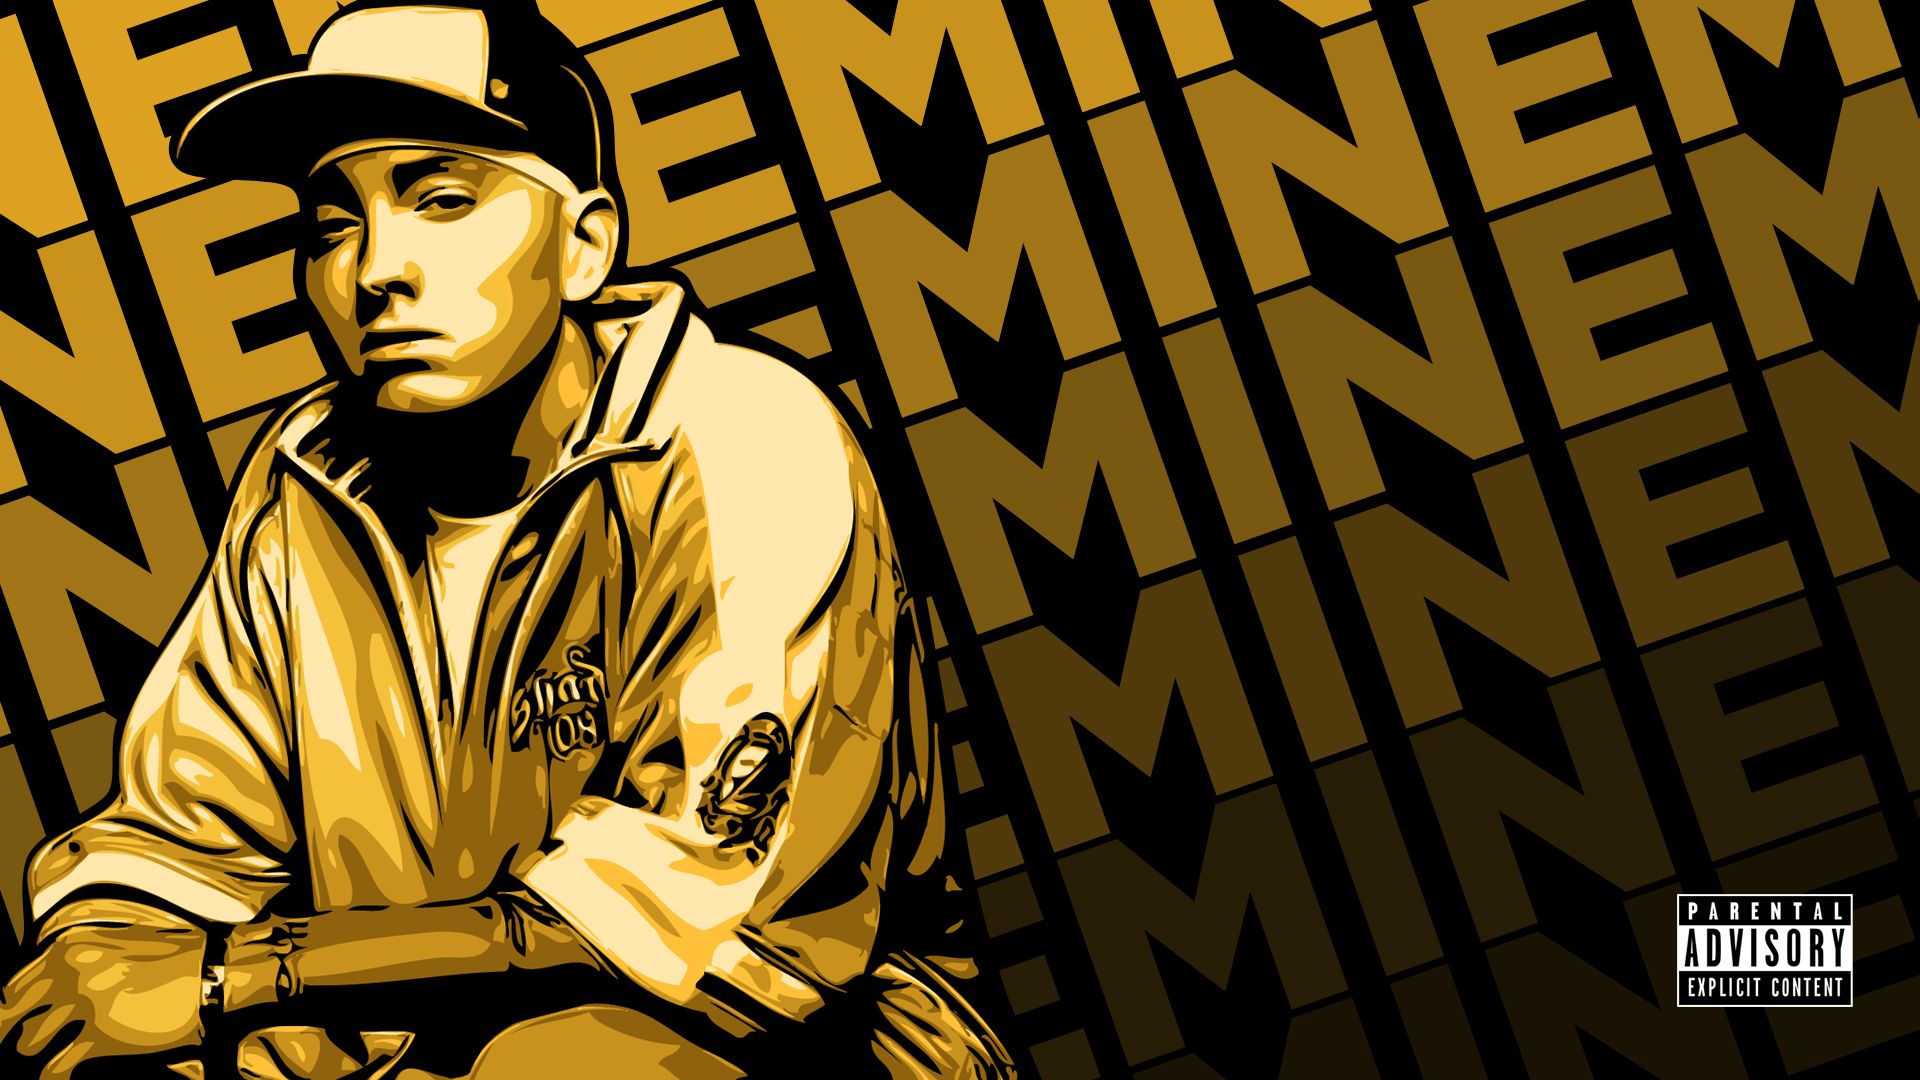 Free download Eminem HD 19 Rap Wallpaper [1920x1080]